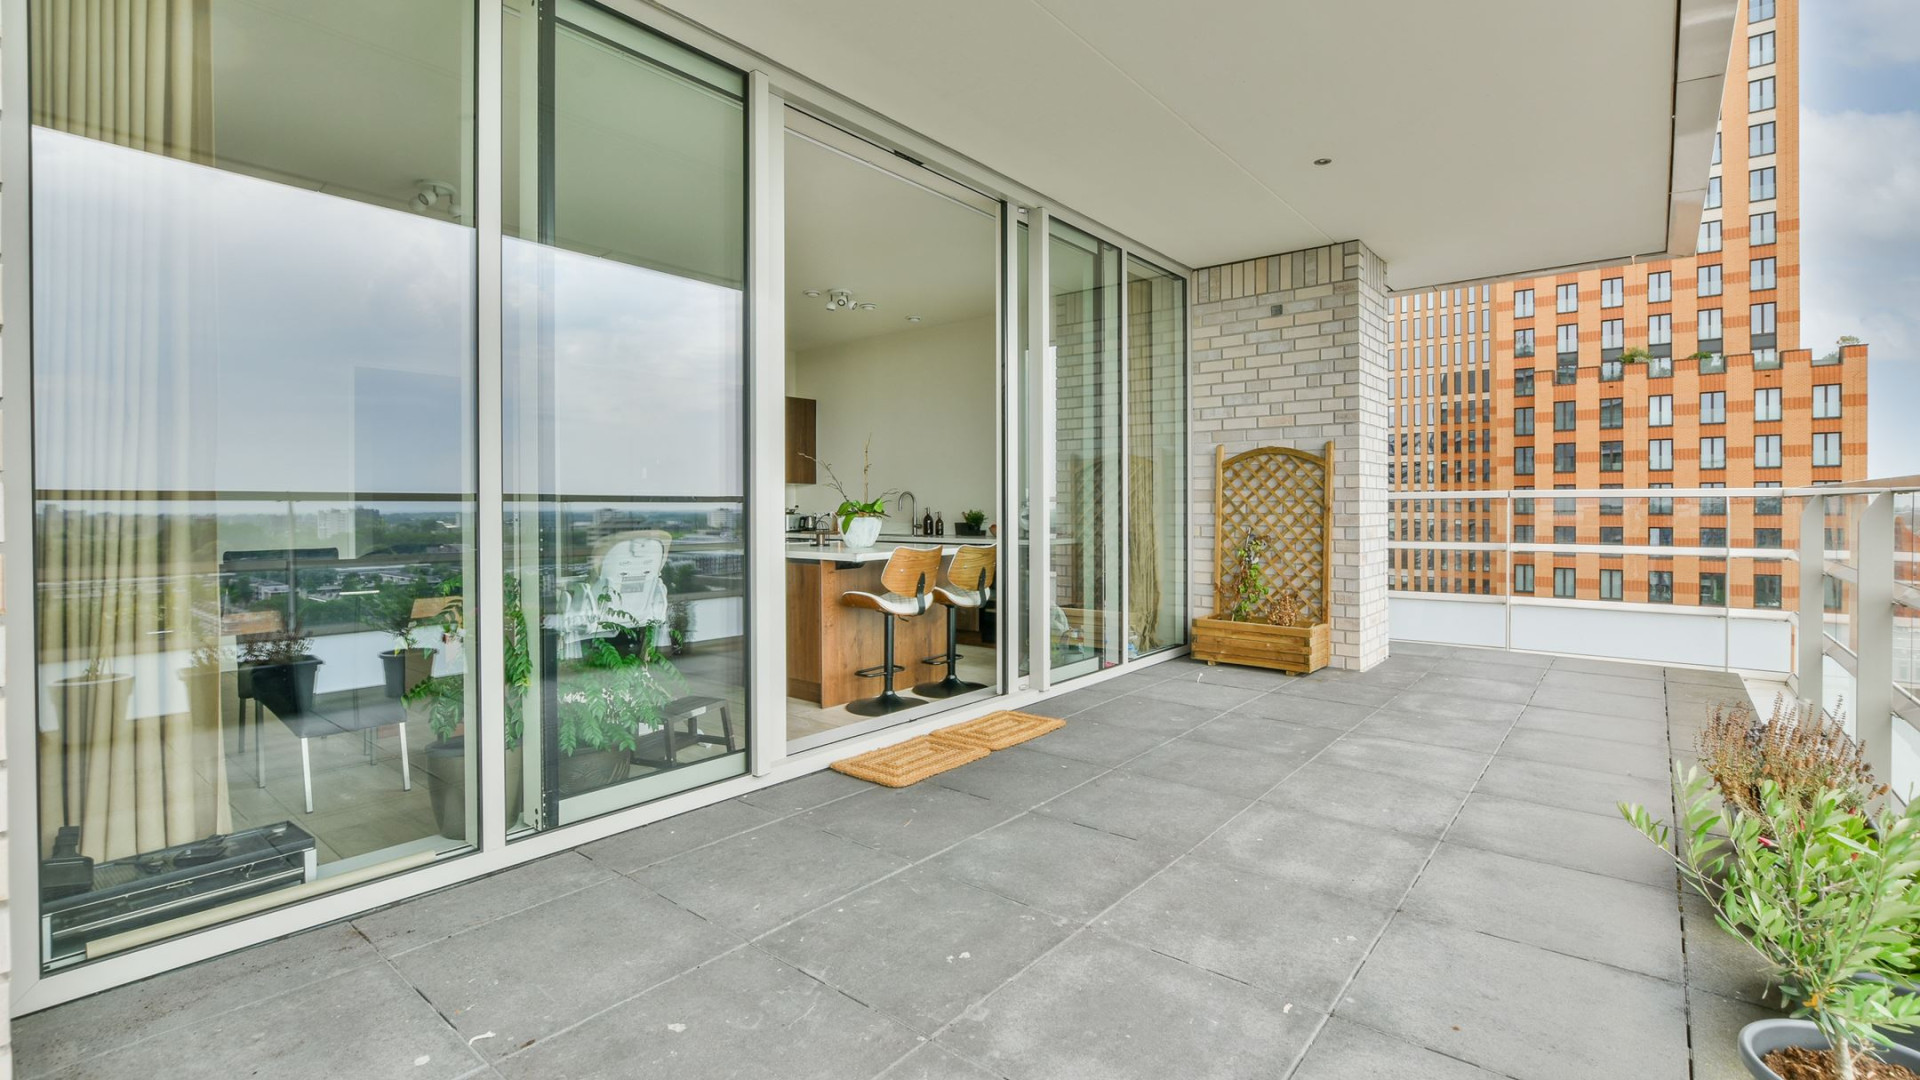 Oranje en Ajax voetballer Jurrien Timber koopt dit luxe appartement aan de Amsterdamse Zuid-As. Zie foto's 11